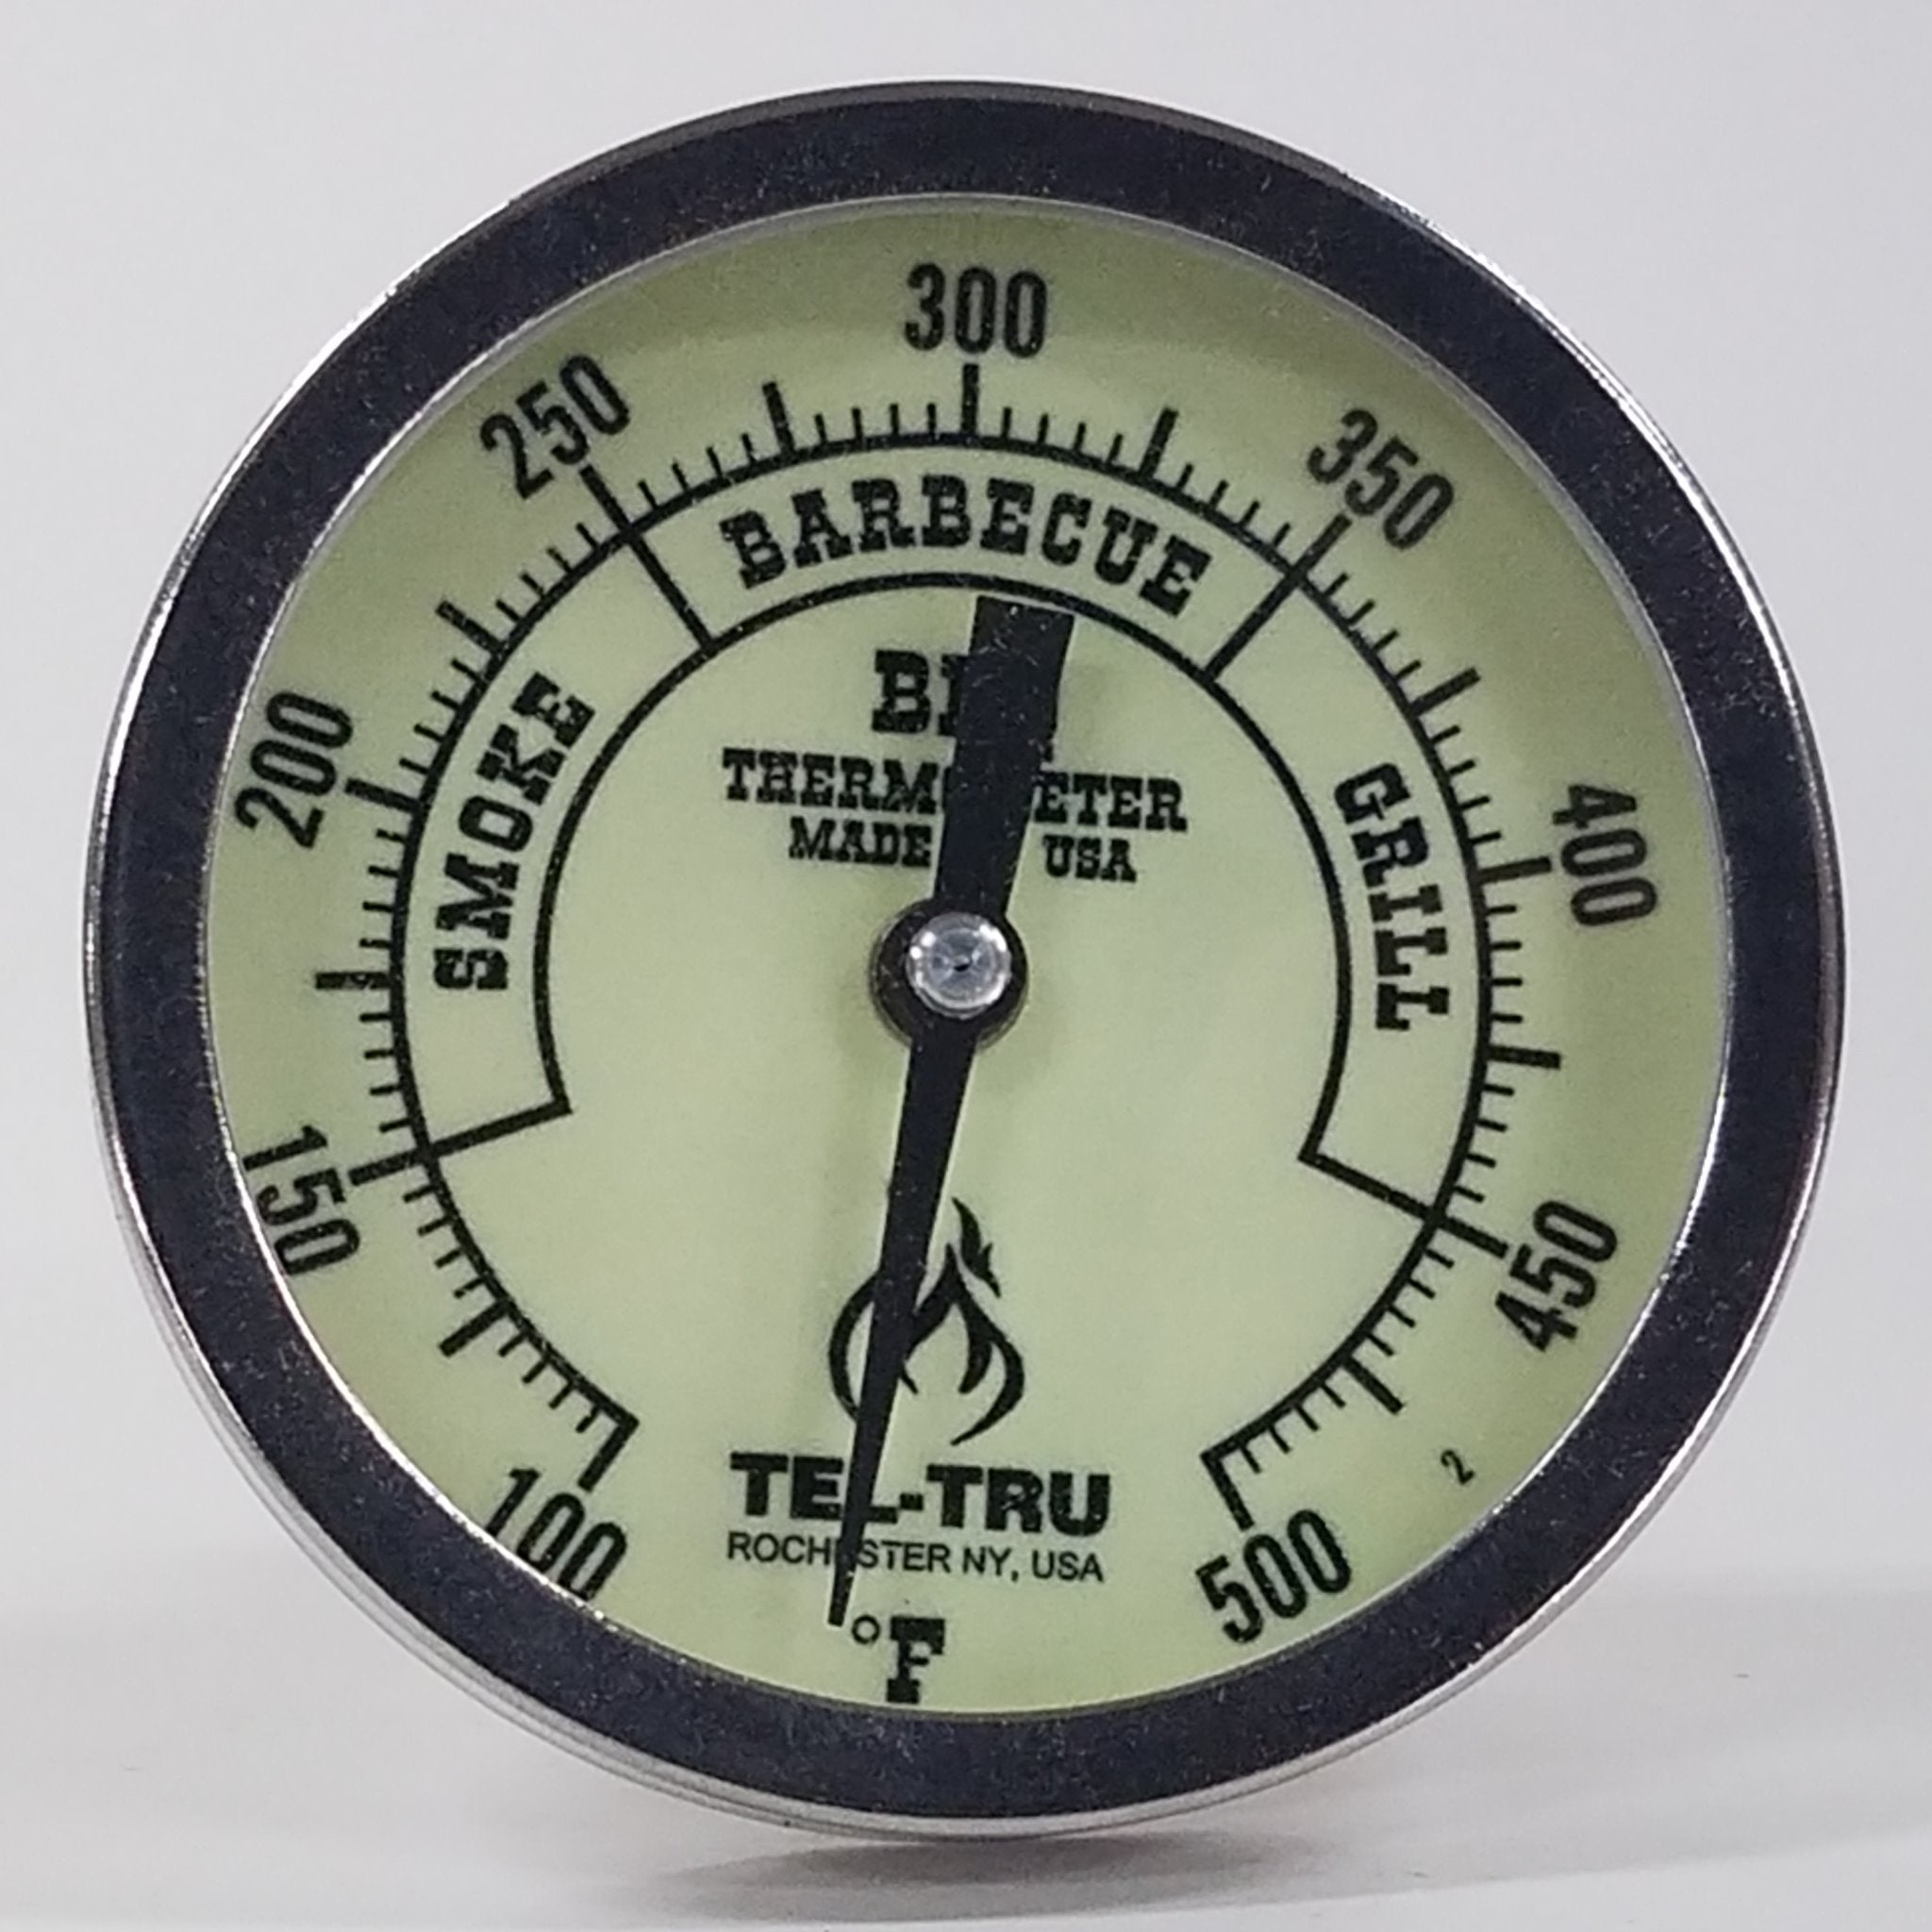 Tel-Tru BQ300 BBQ Grill & Smoker Thermometer Black 3 Dial w/ 2.5 Ste –  BBQ Bonanza